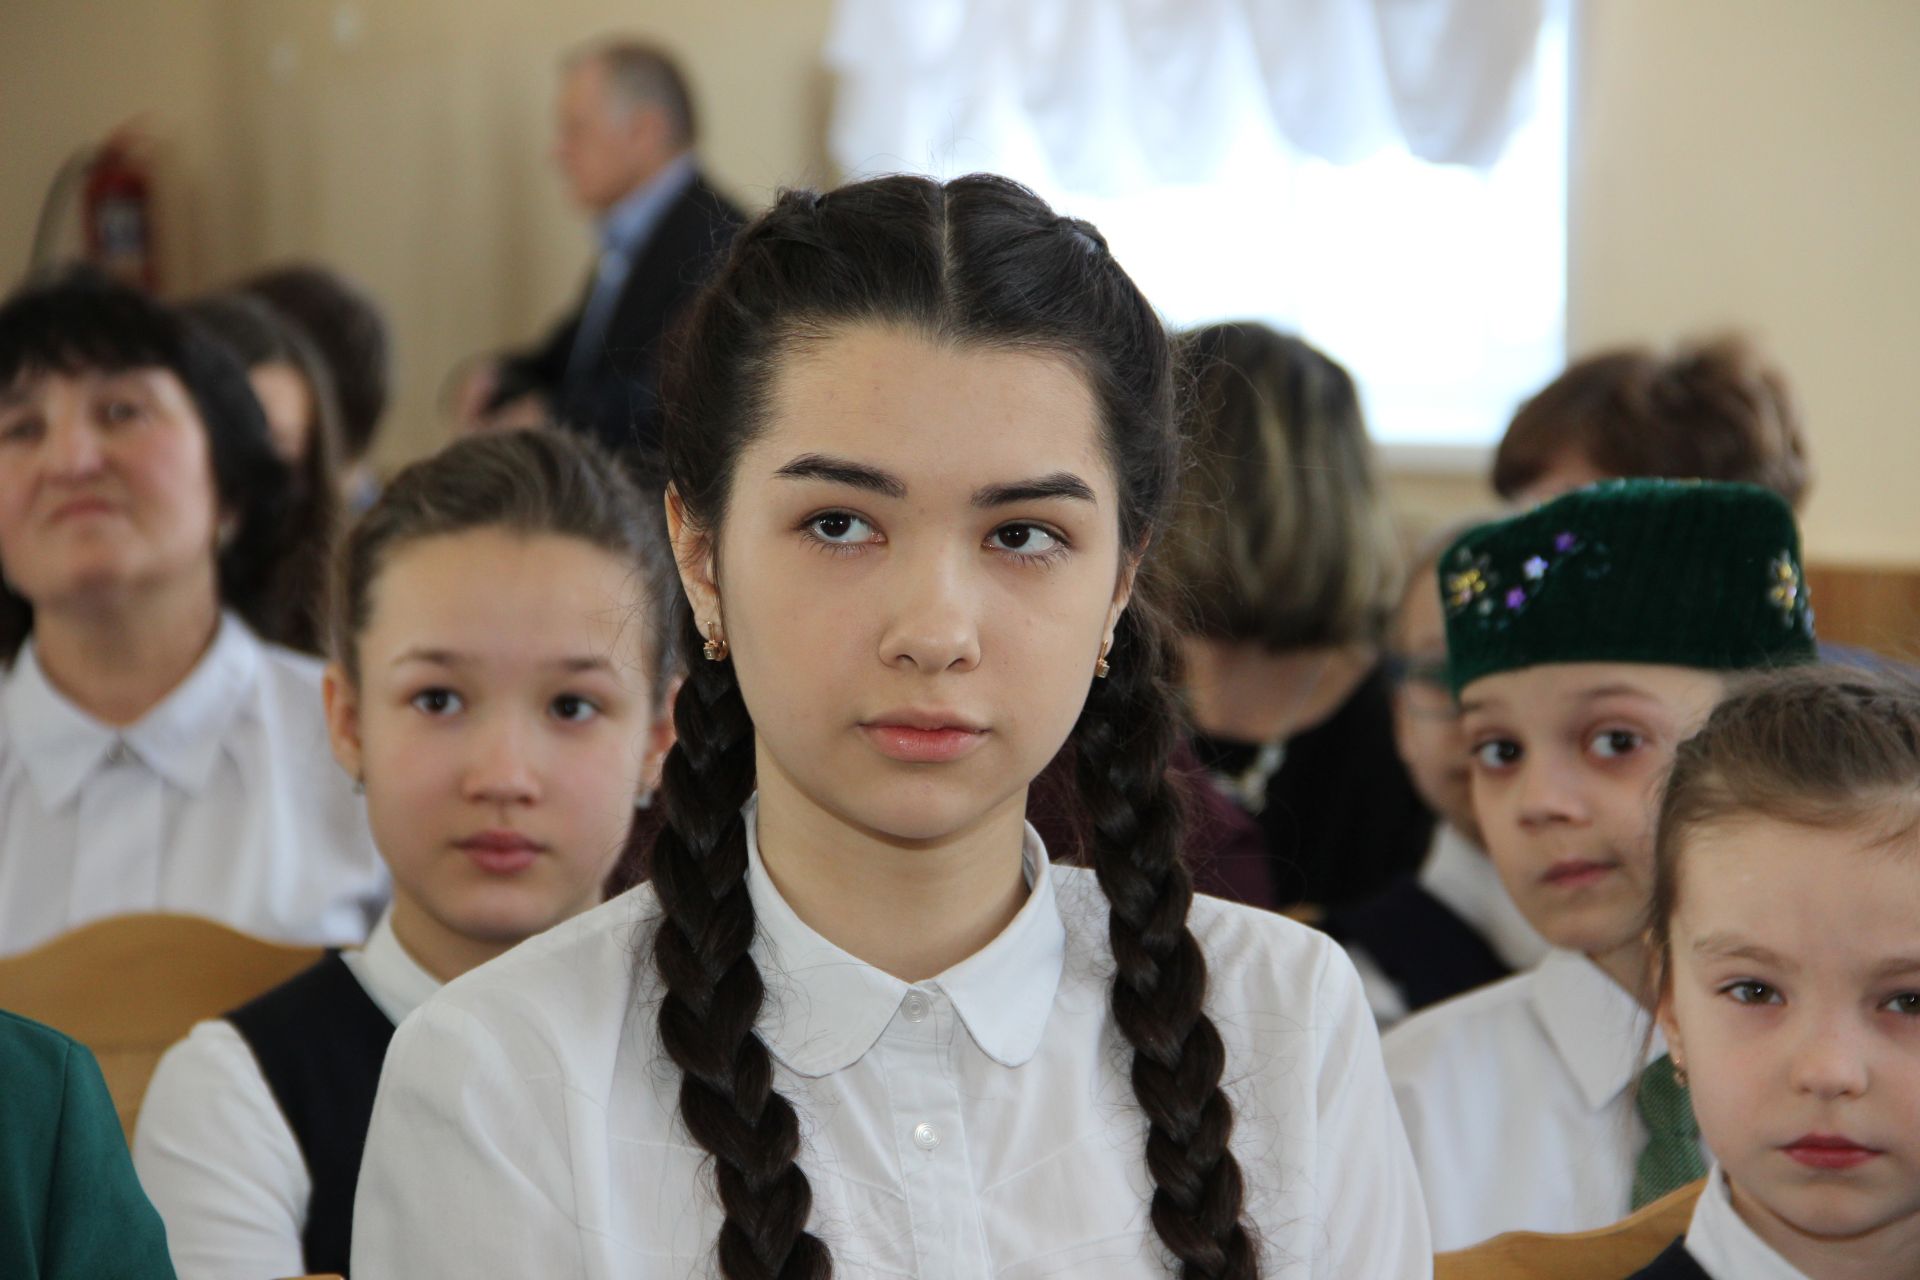 Яшел Үзәннең 3нче гимназиясе күренекле татарларны барлады